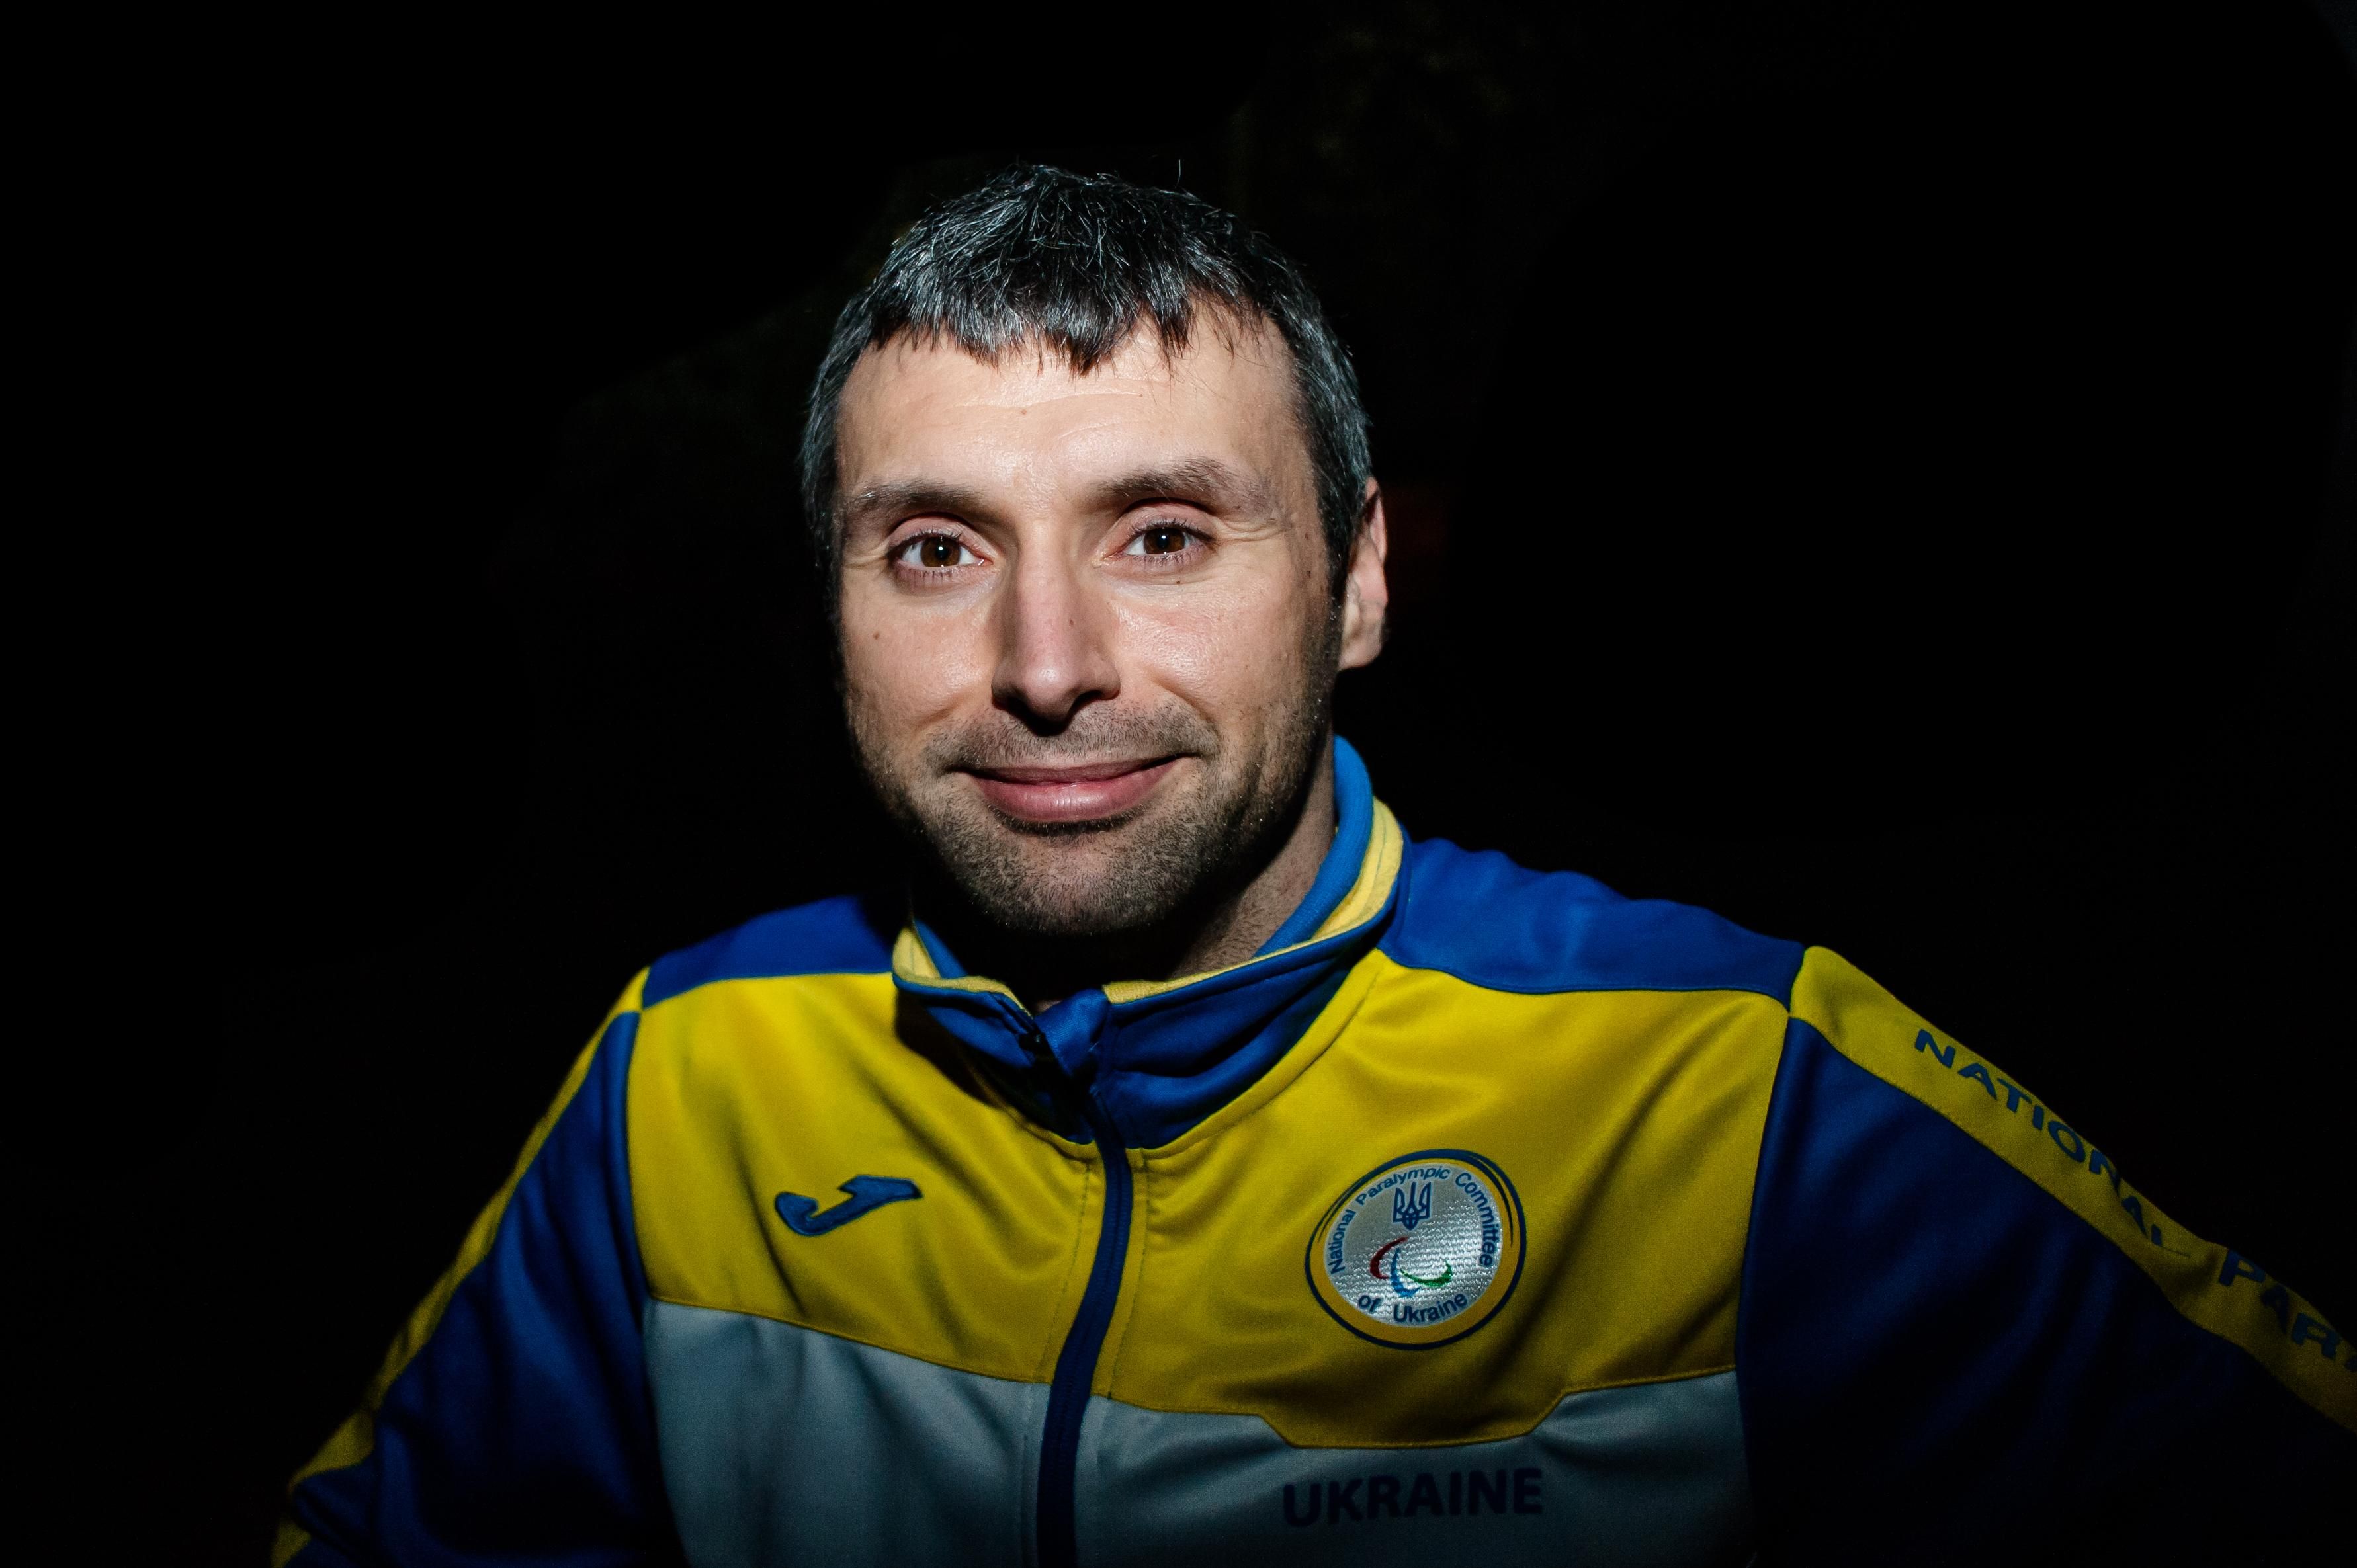 Сильная история одного из самых успешных паралимпийских фехтовальщиков Украины